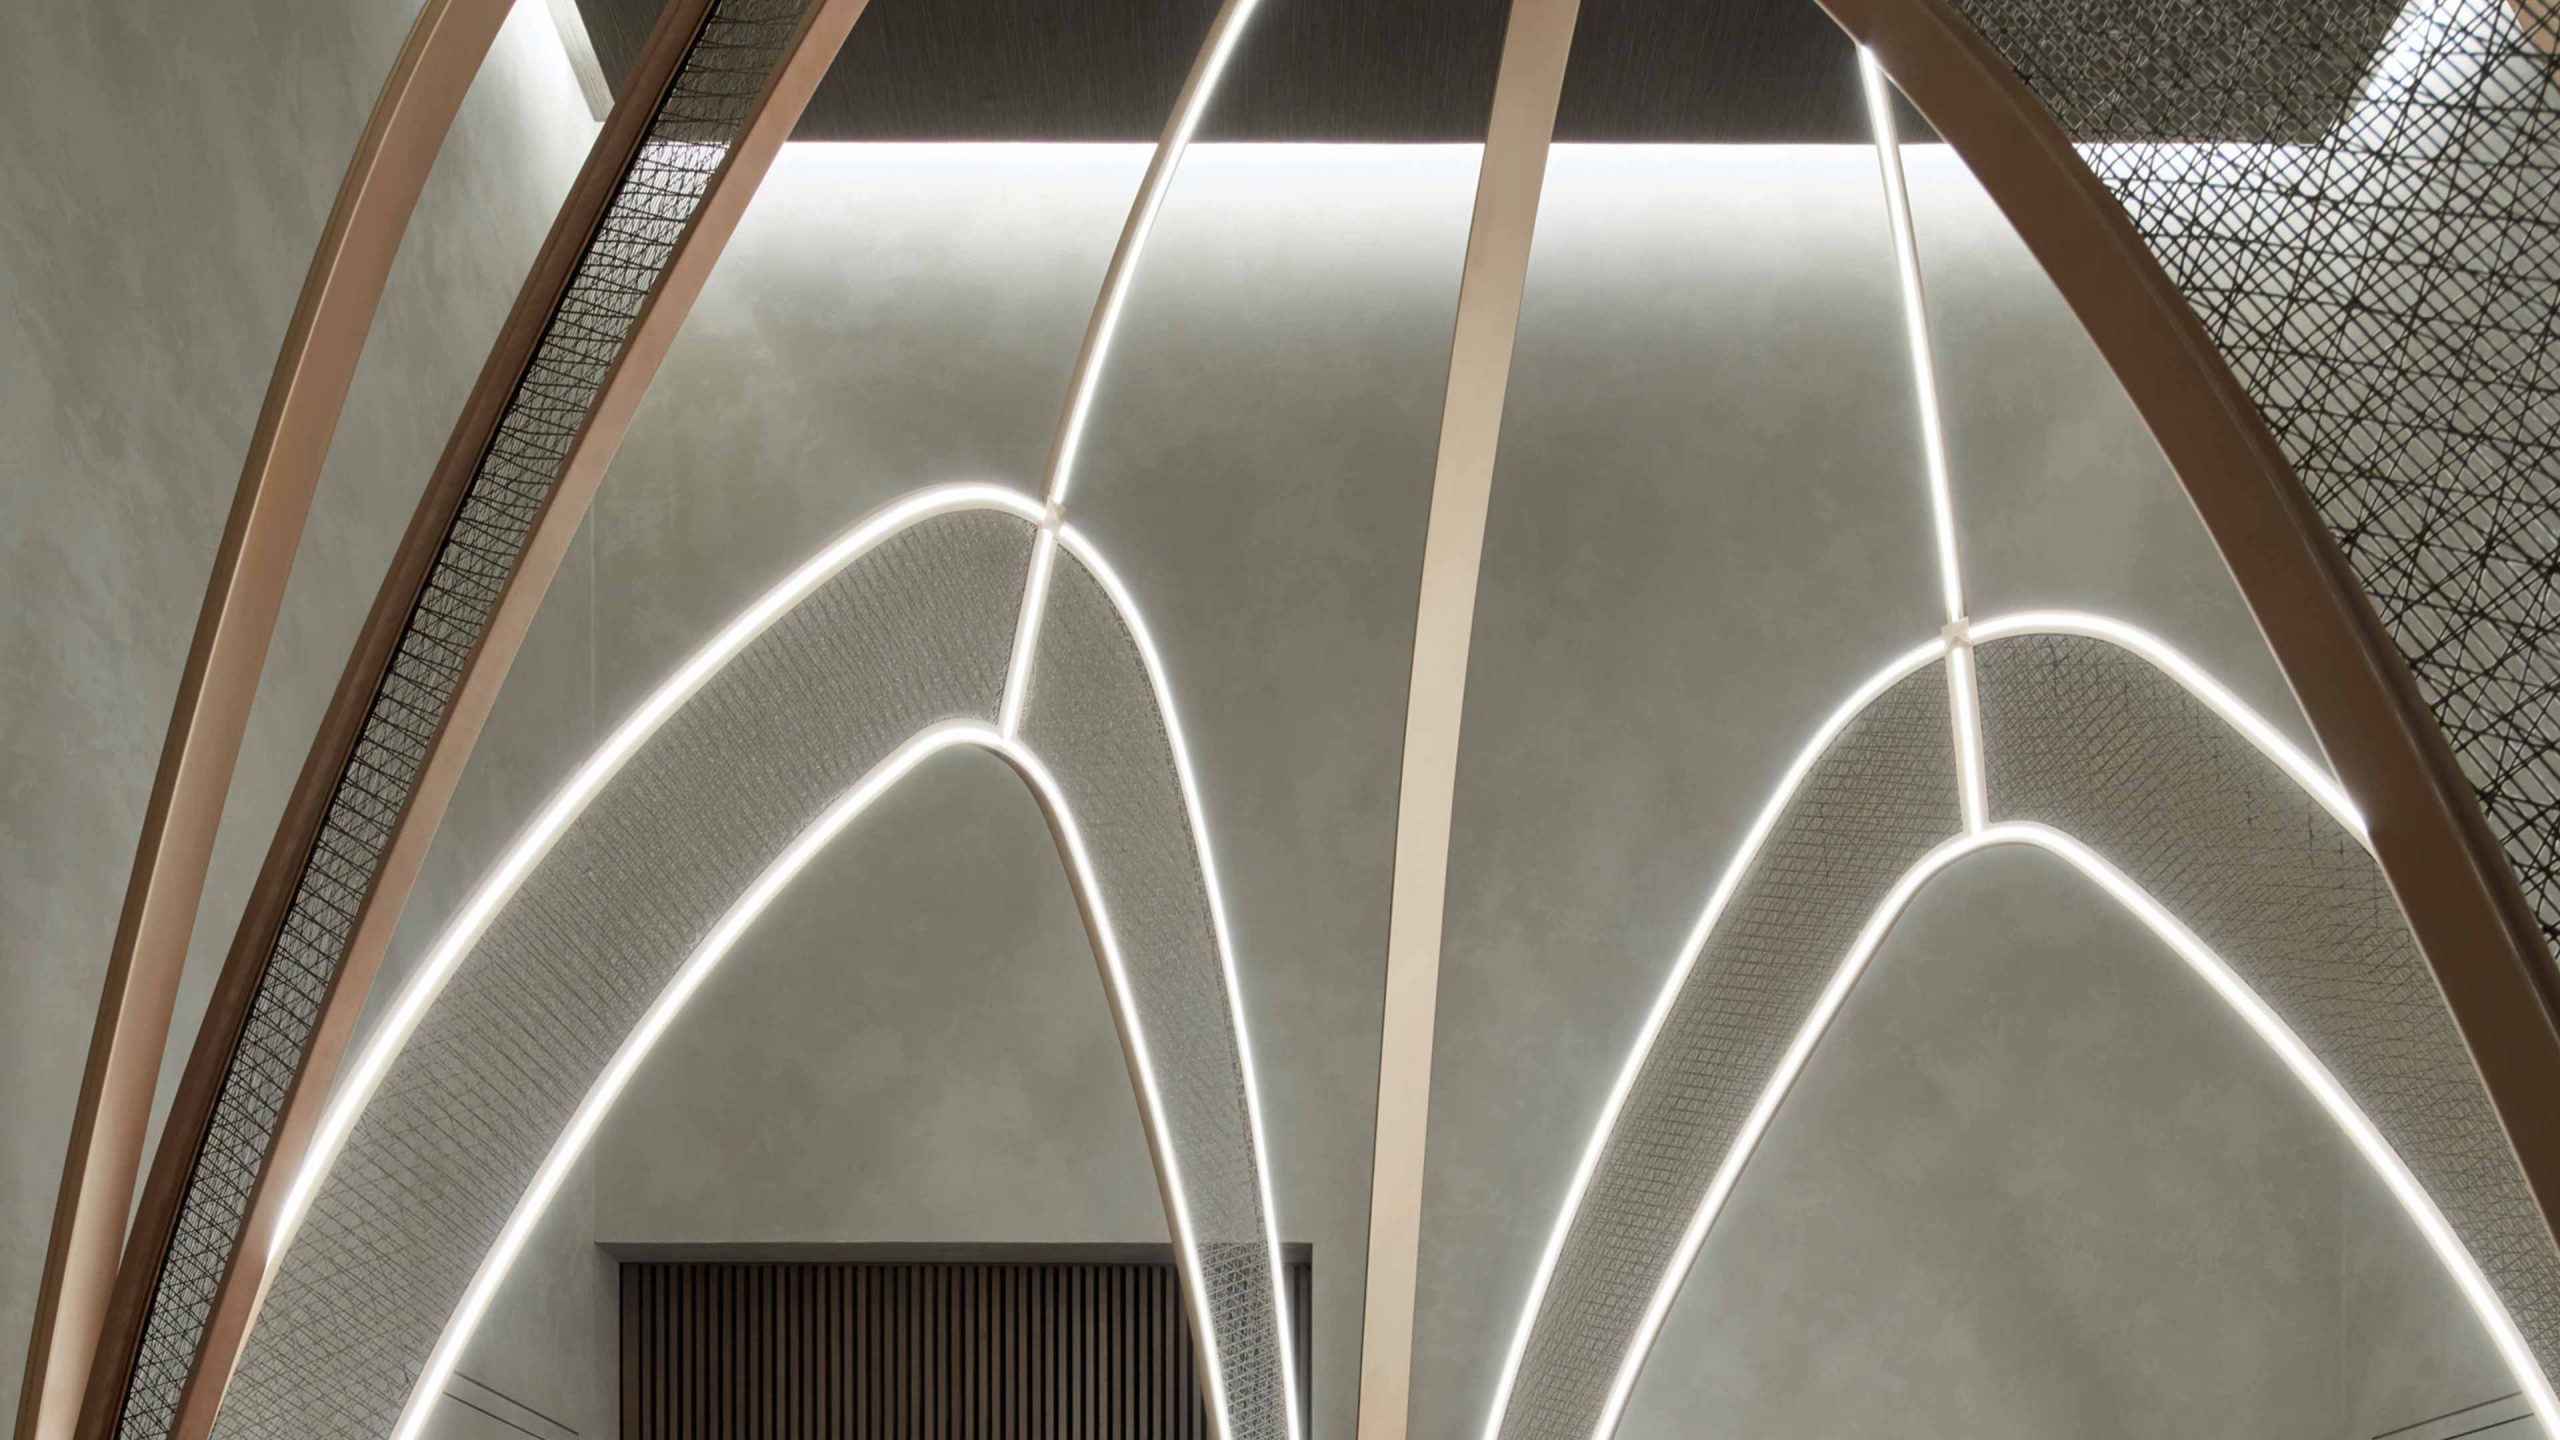 Lighting Design Illuminated Feature Arches SensAsia Stories Luxury Spa Dubai Consultants Studio N